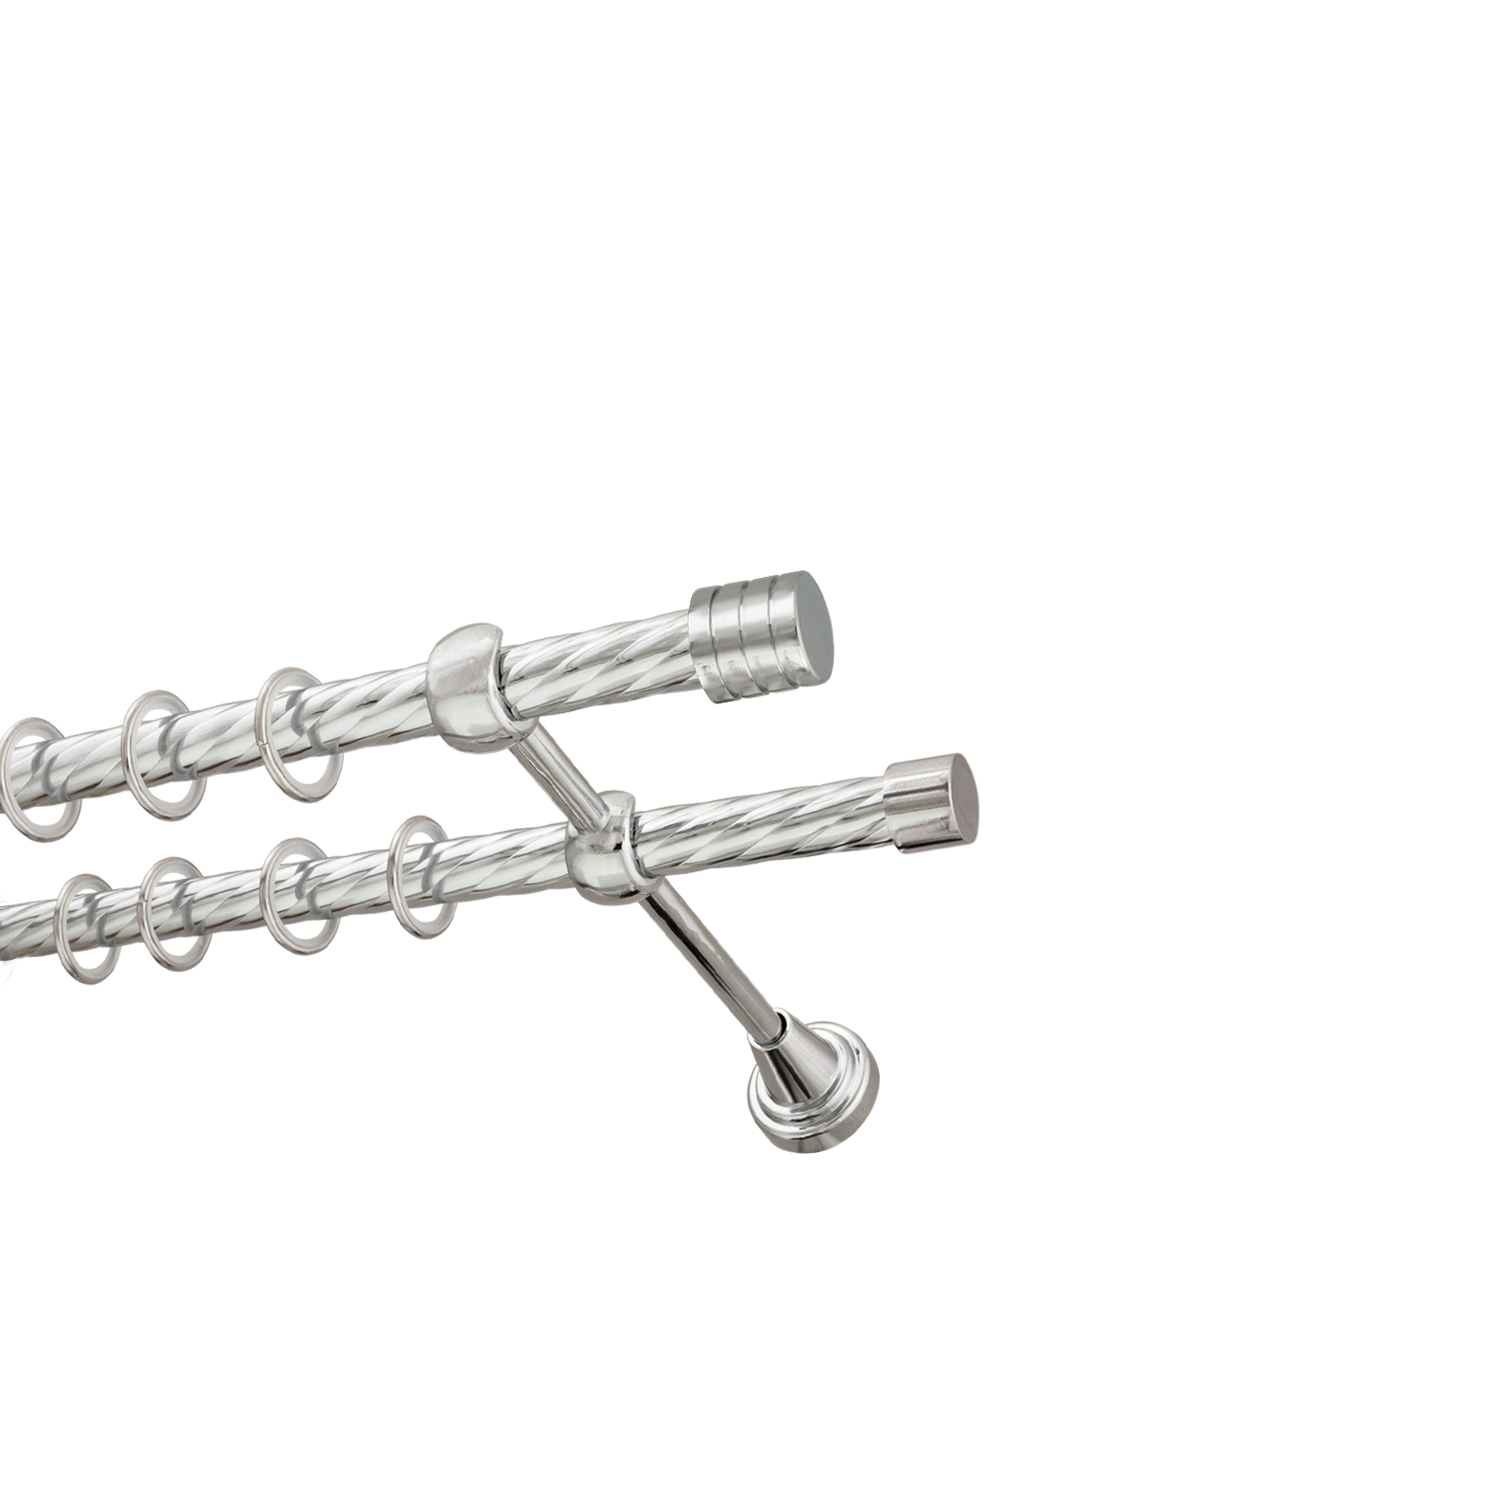 Металлический карниз для штор Подиум, двухрядный 16/16 мм, серебро, витая штанга, длина 200 см - фото Wikidecor.ru